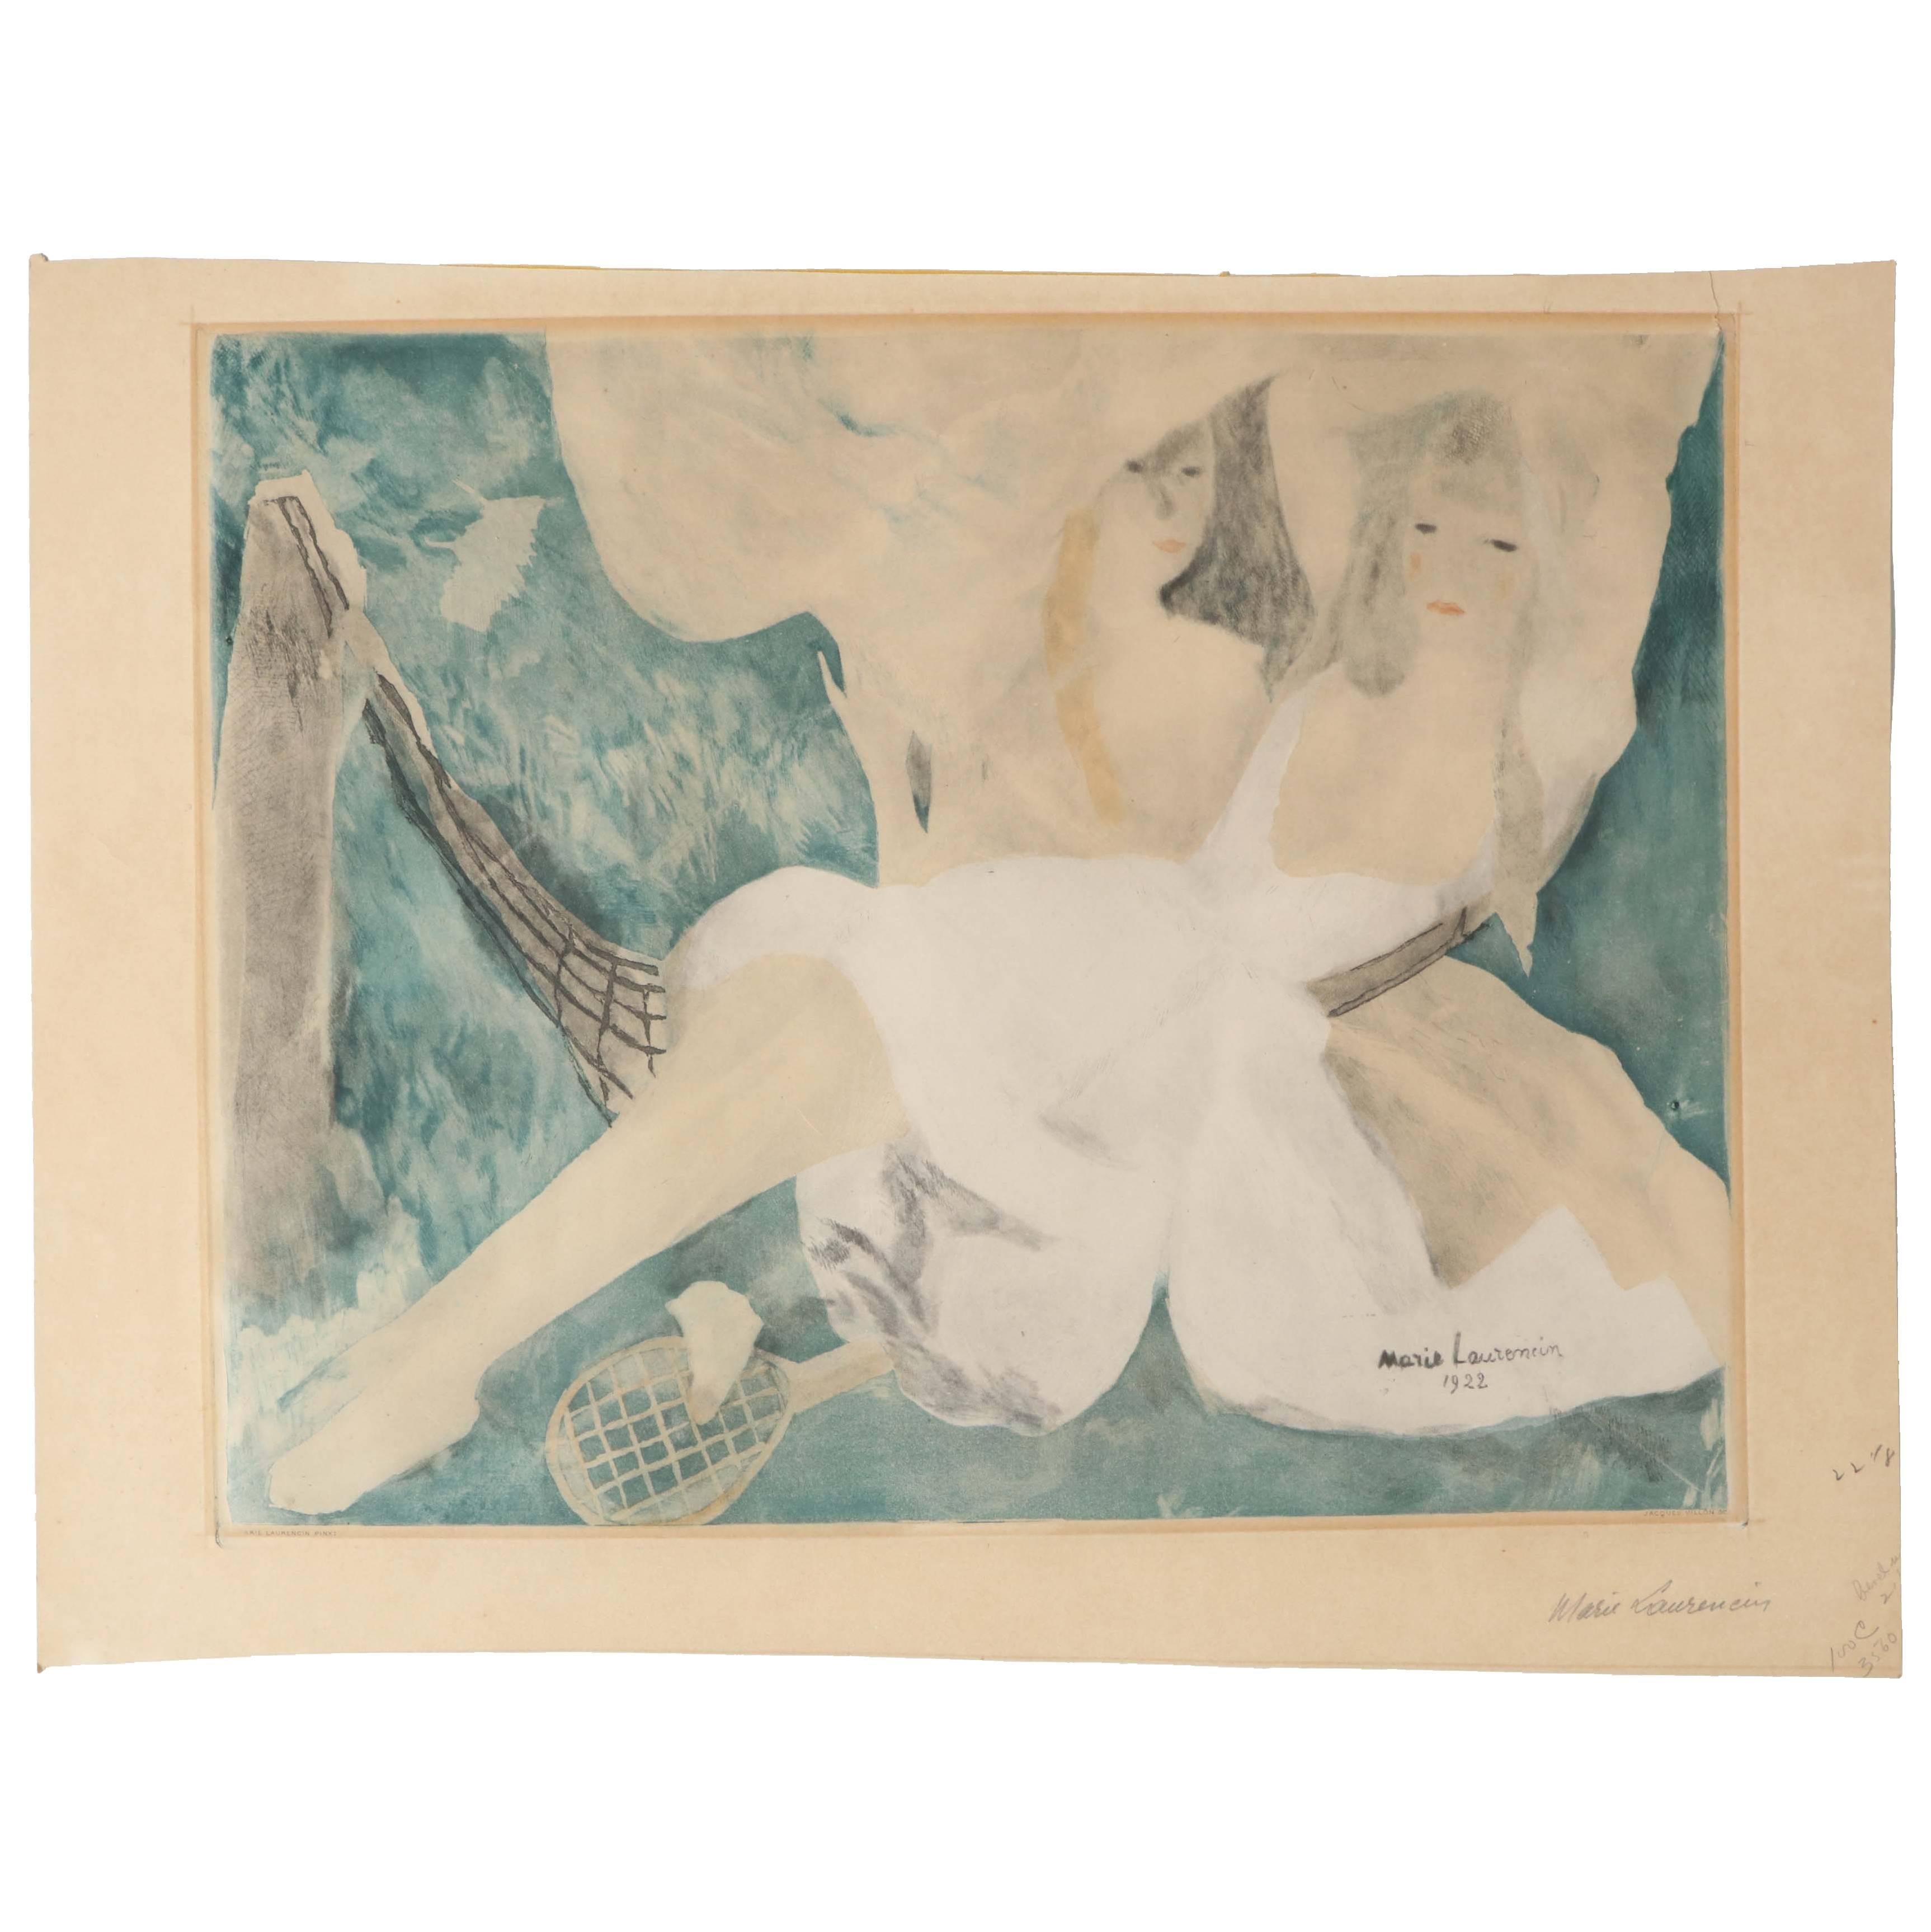 "La femme au hamac"Jacques Villon after Marie Laurencin Aquatint on Paper 1924